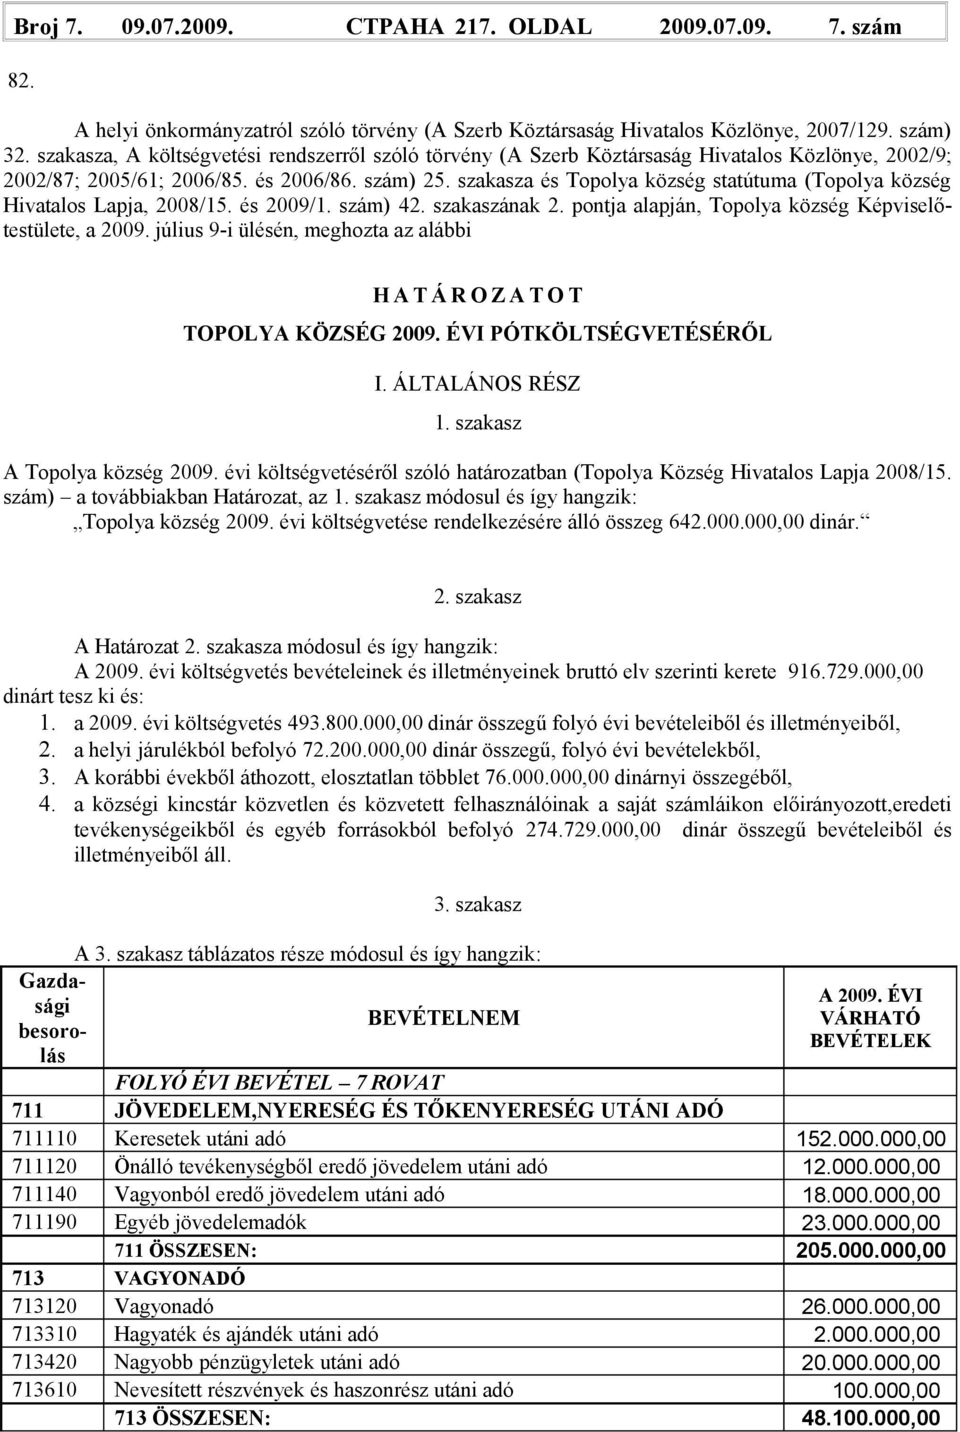 szakasza és Topolya község statútuma (Topolya község Hivatalos Lapja, 2008/15. és 2009/1. szám) 42. szakaszának 2. pontja alapján, Topolya község Képviselőtestülete, a 2009.